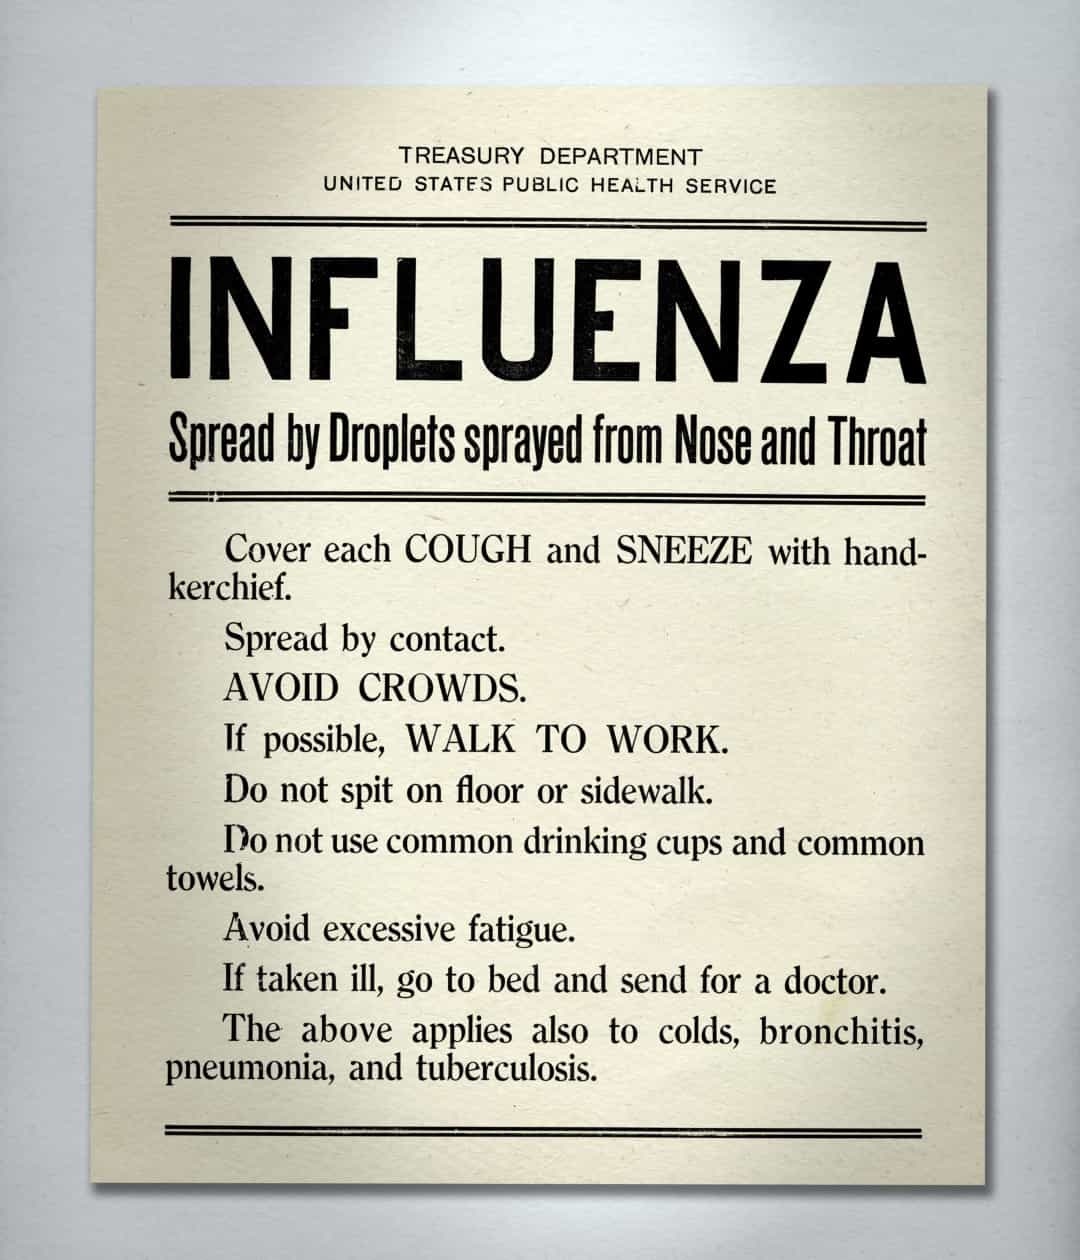 Biển báo hướng dẫn trong đại dịch cúm Tây Ban Nha 1918 bao gồm không khạc nhổ trên đường phố, sử dụng khăn tay để che khi ho và hắt hơi, không tụ tập đông người, không sử dụng khăn tắm chung và uống chung cốc,...